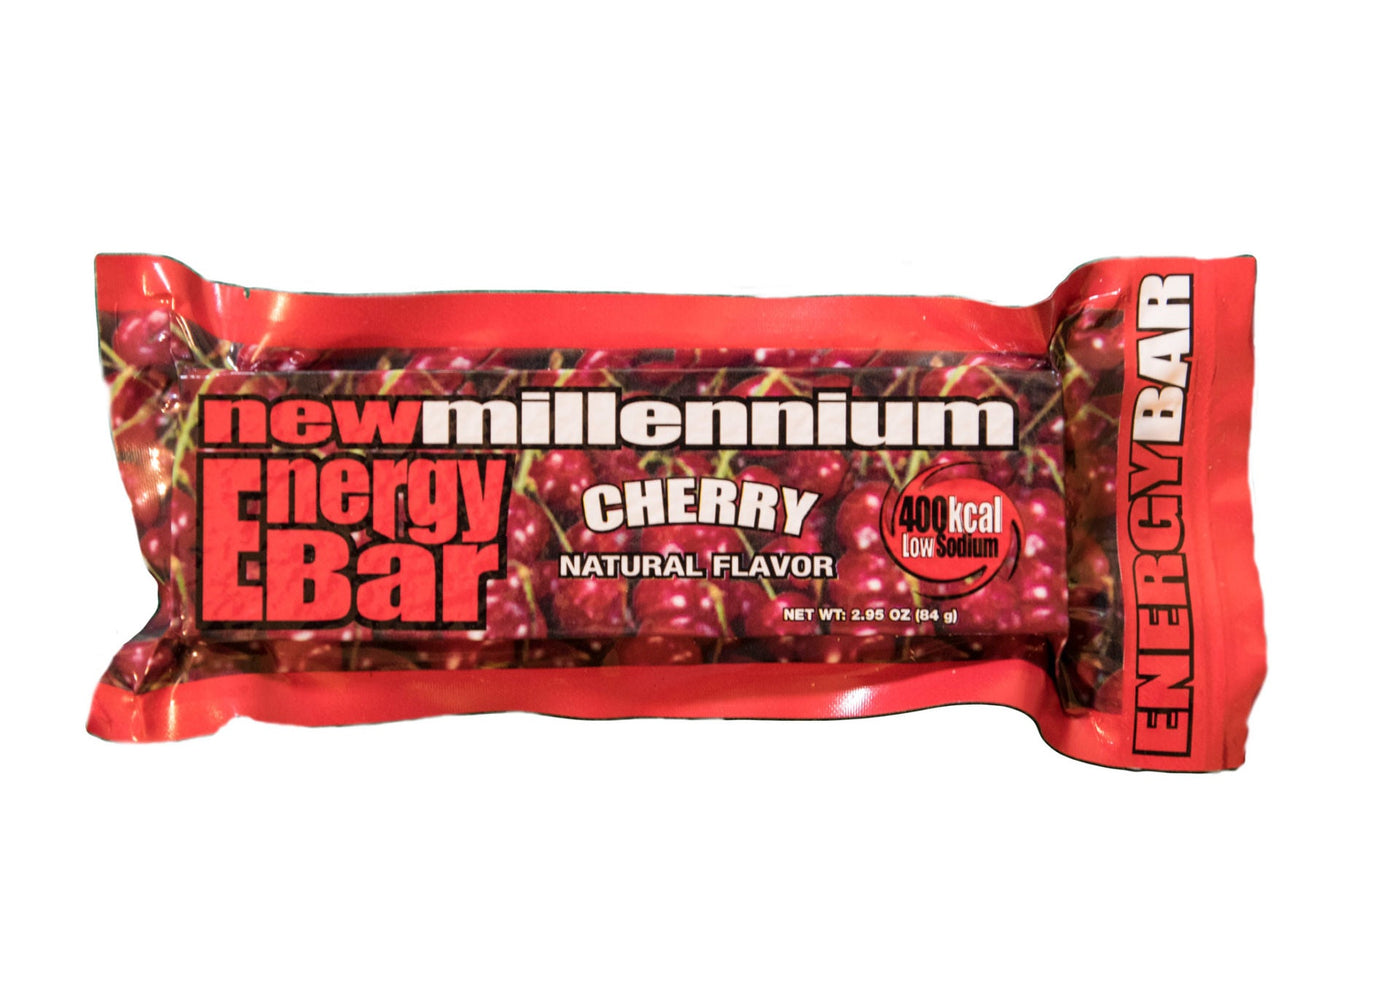 FWCH millenium cherry bar 1 